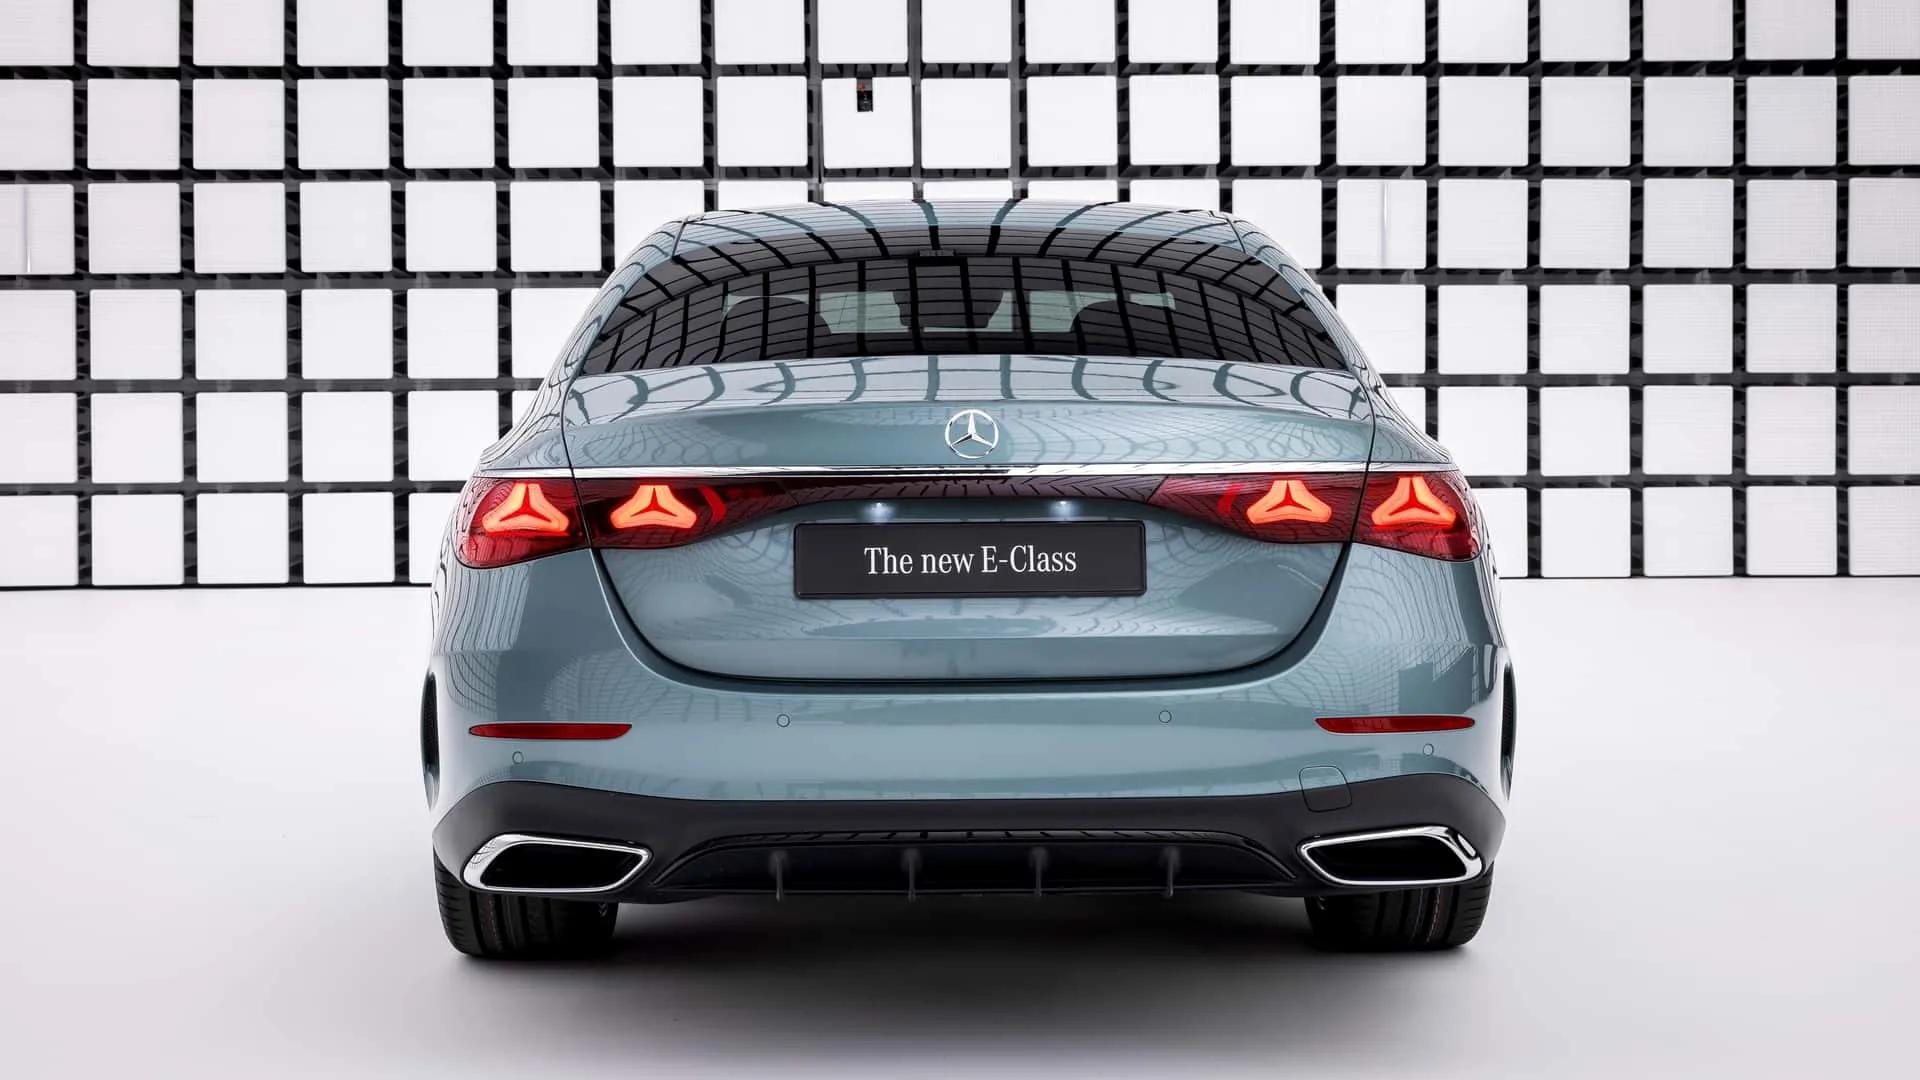 全新奔驰E级正式发布——豪华轿车的标杆级产品